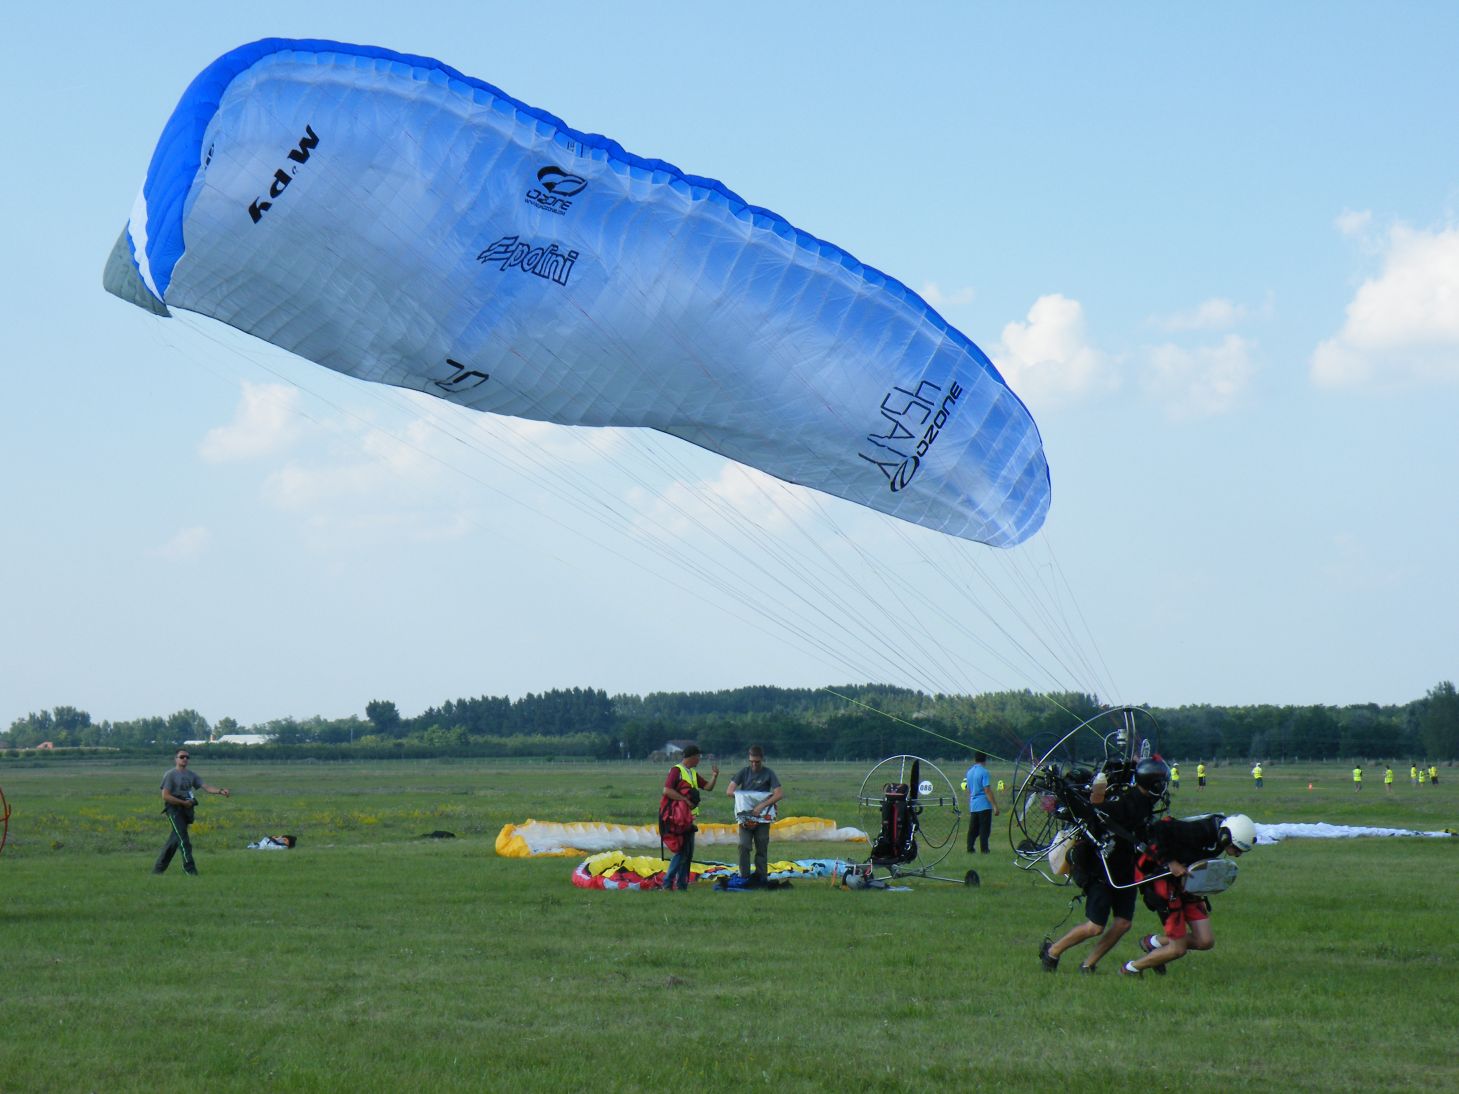 PPG, motoros siklóernyő, az egyik legnépszerűbb repülő versenysport